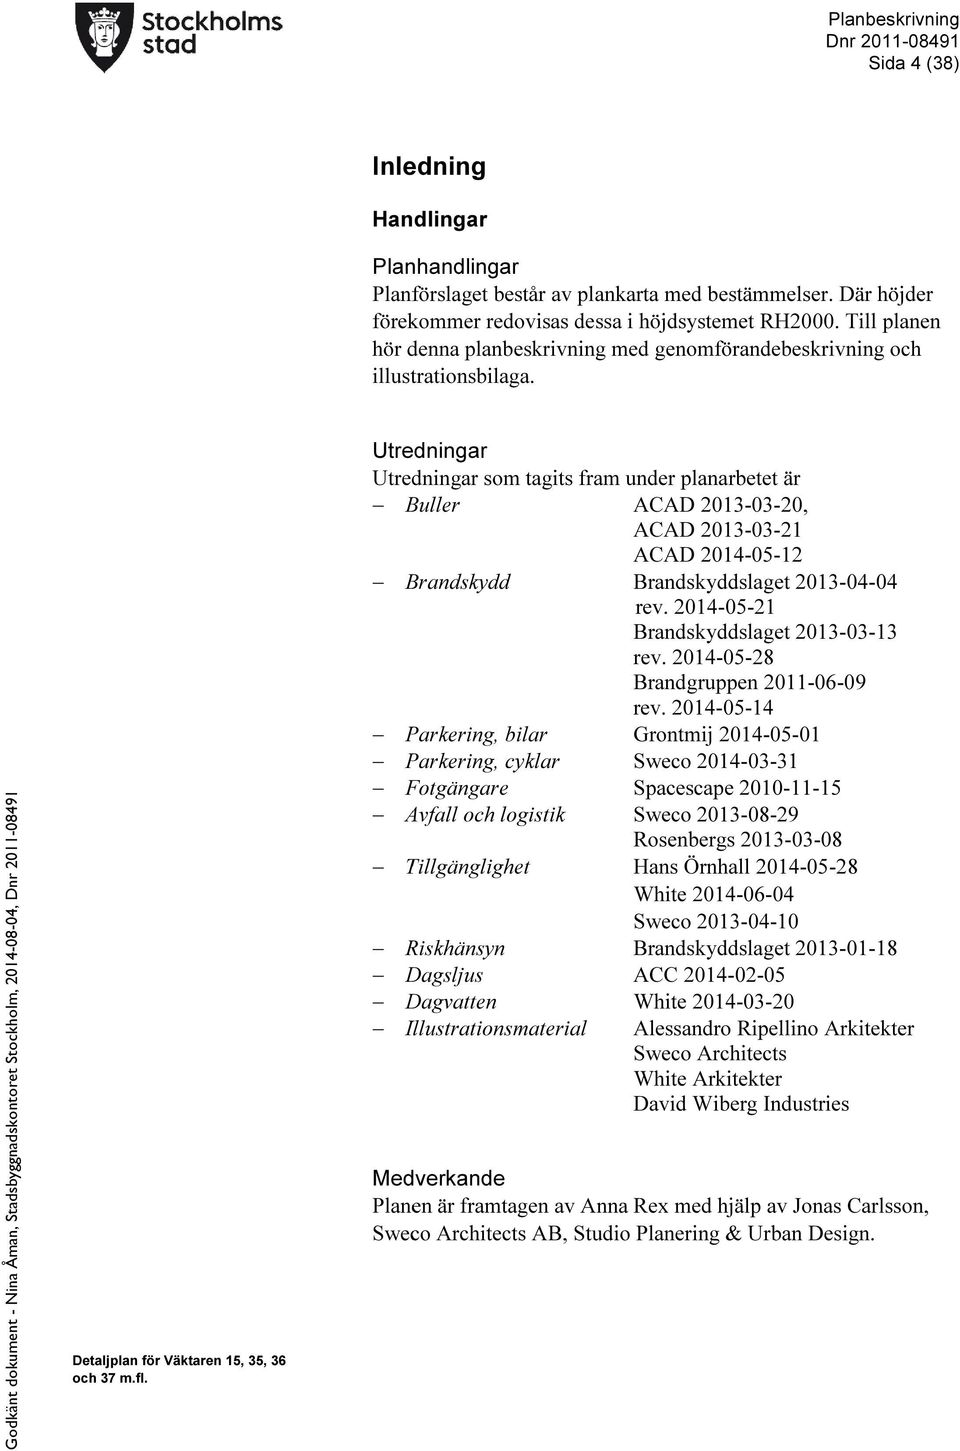 Godkänt dokument - Nina Åman, Stadsbyggnadskontoret Stockholm, 2014-08-04, Utredningar Utredningar som tagits fram under planarbetet är Buller ACAD 2013-03-20, ACAD 2013-03-21 ACAD 2014-05-12